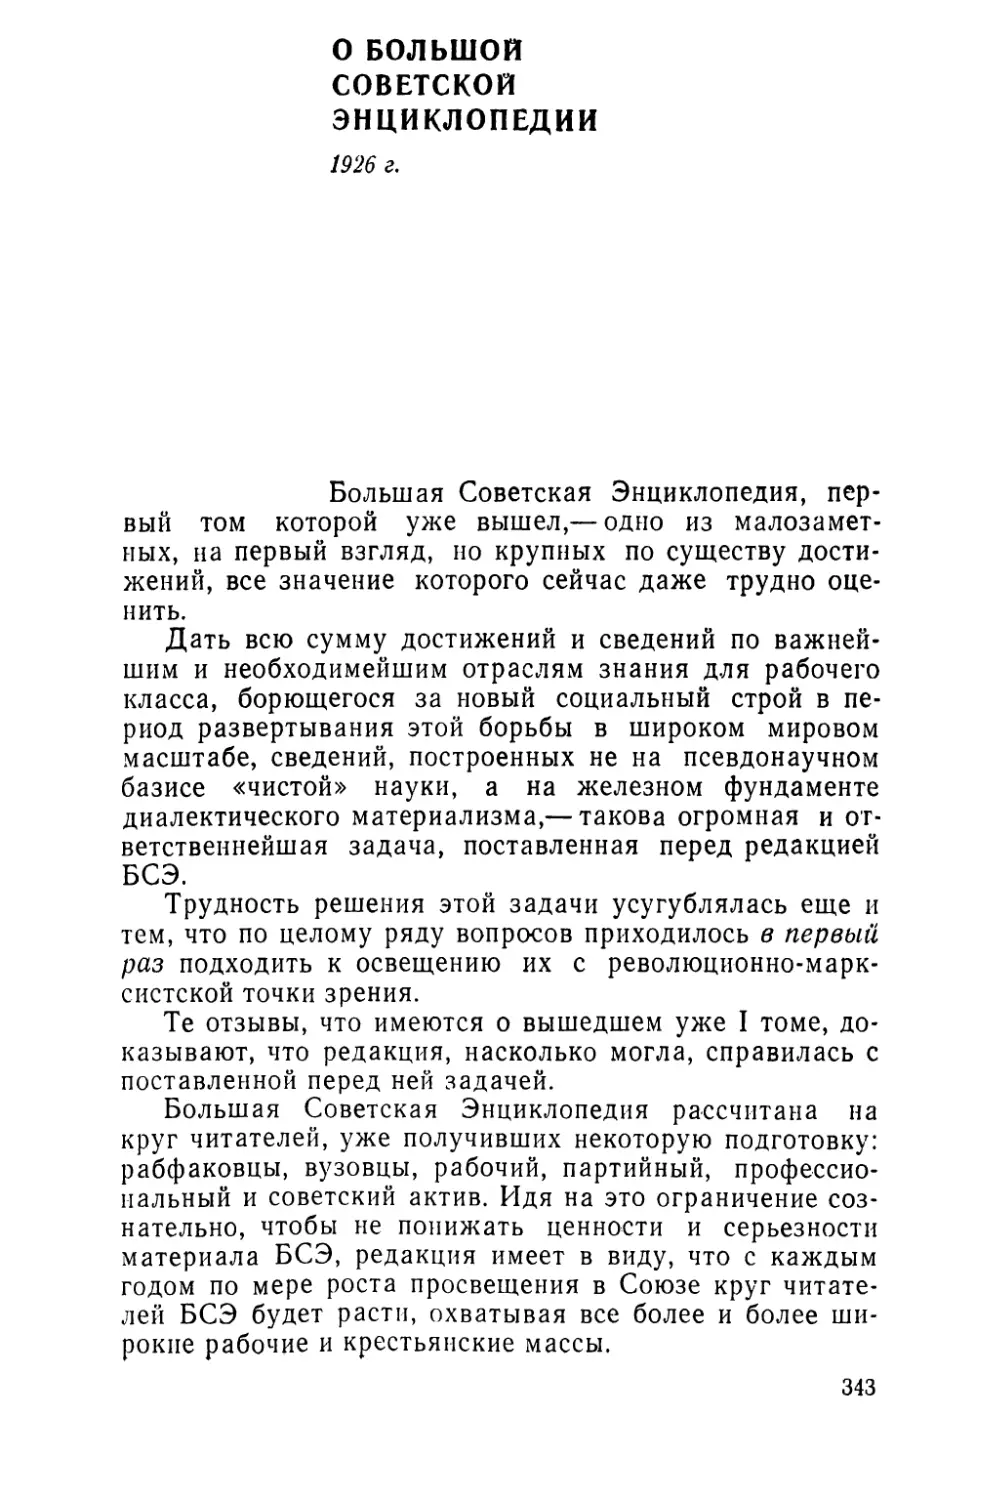 О БОЛЬШОЙ СОВЕТСКОЙ ЭНЦИКЛОПЕДИИ. 1926 г.